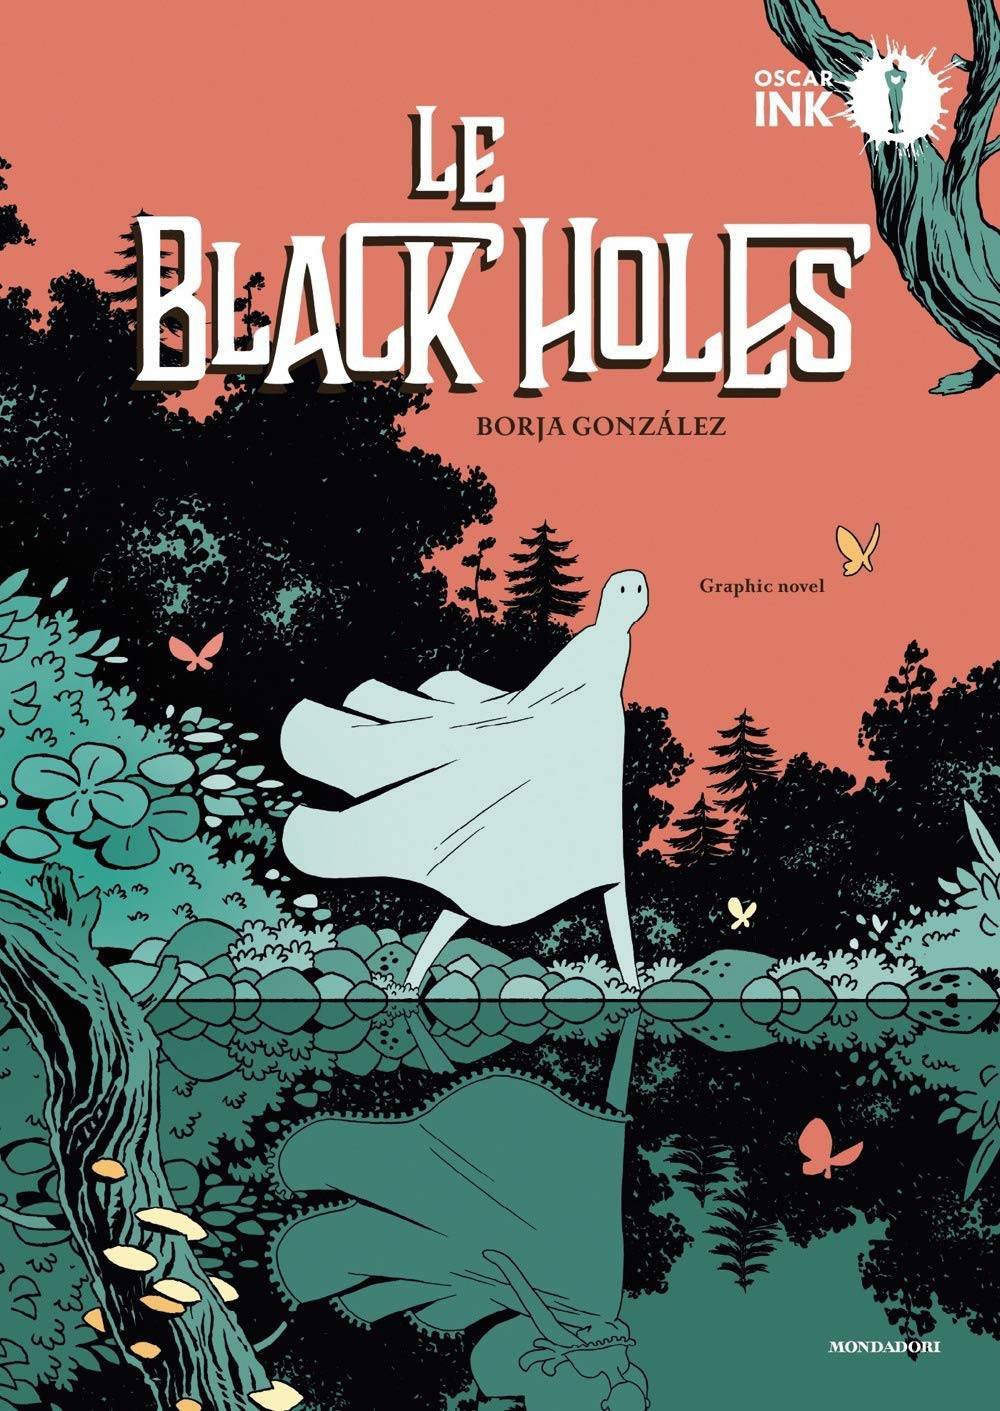 Immagine di Le Black Holes, recensione: notti magiche e scatole dal passato